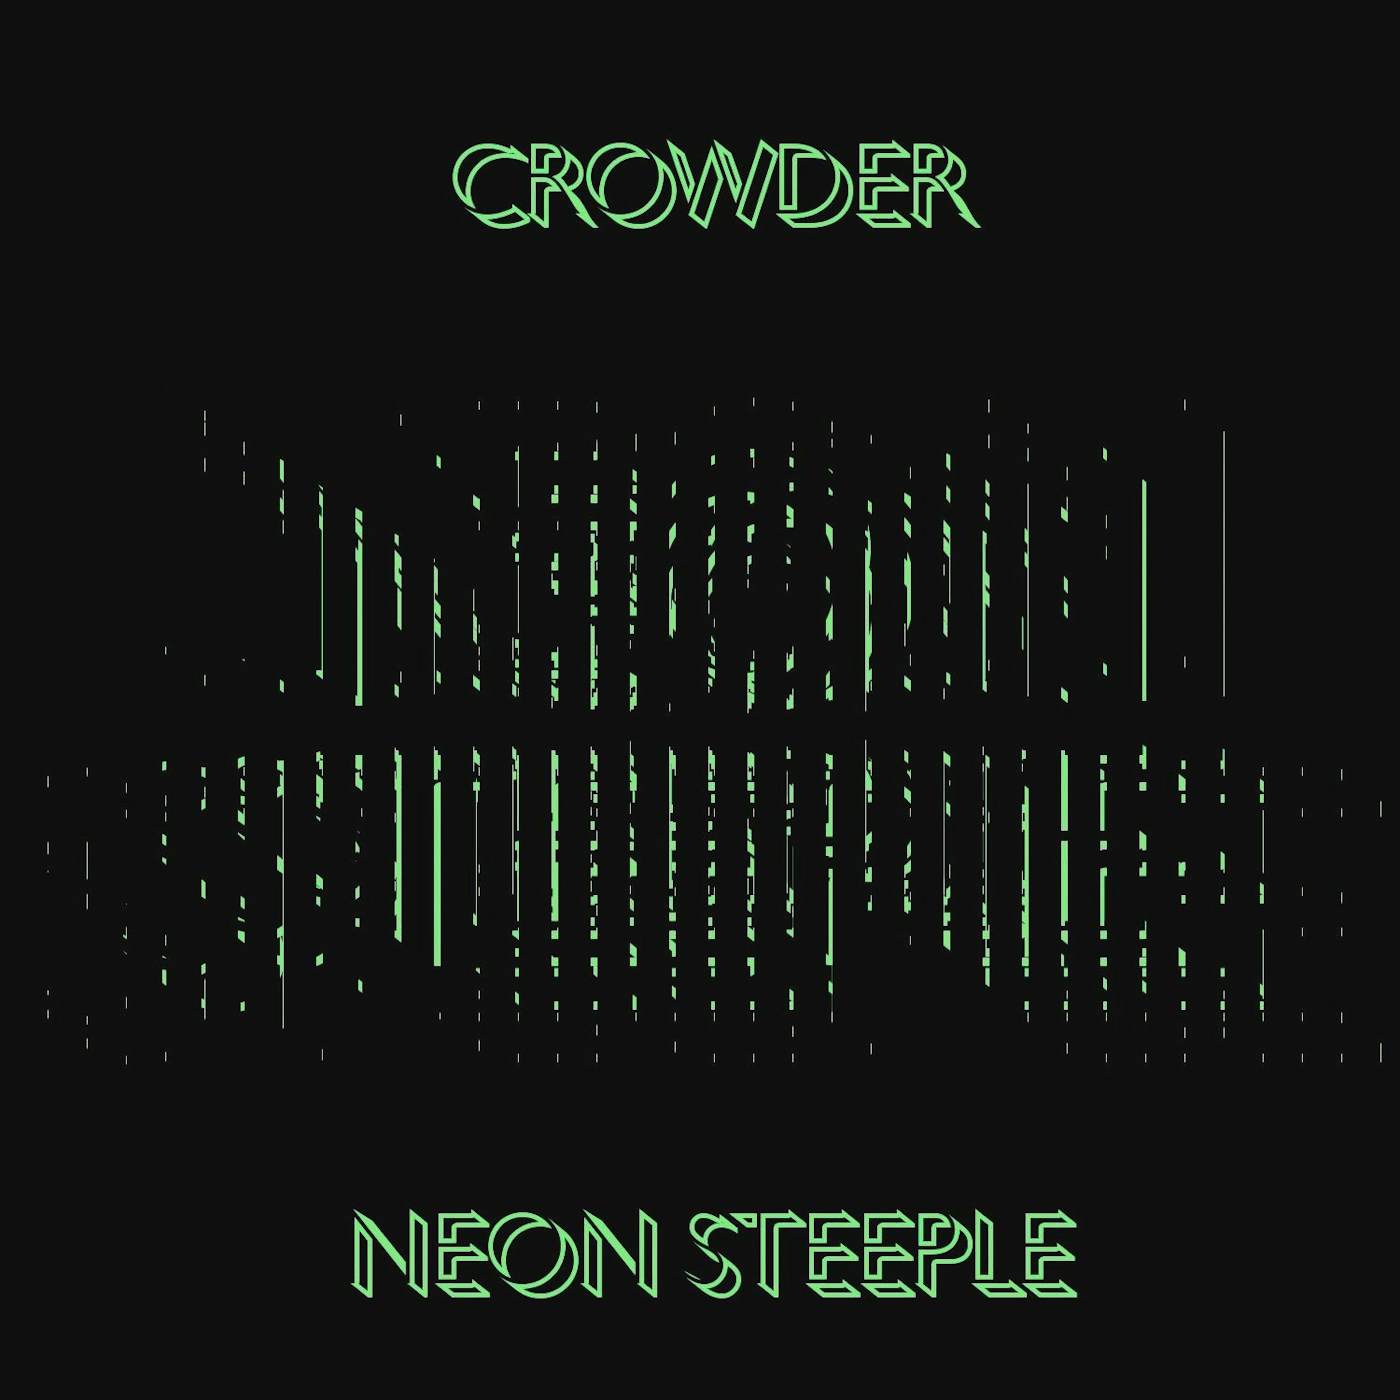 Crowder 'Neon Steeple'